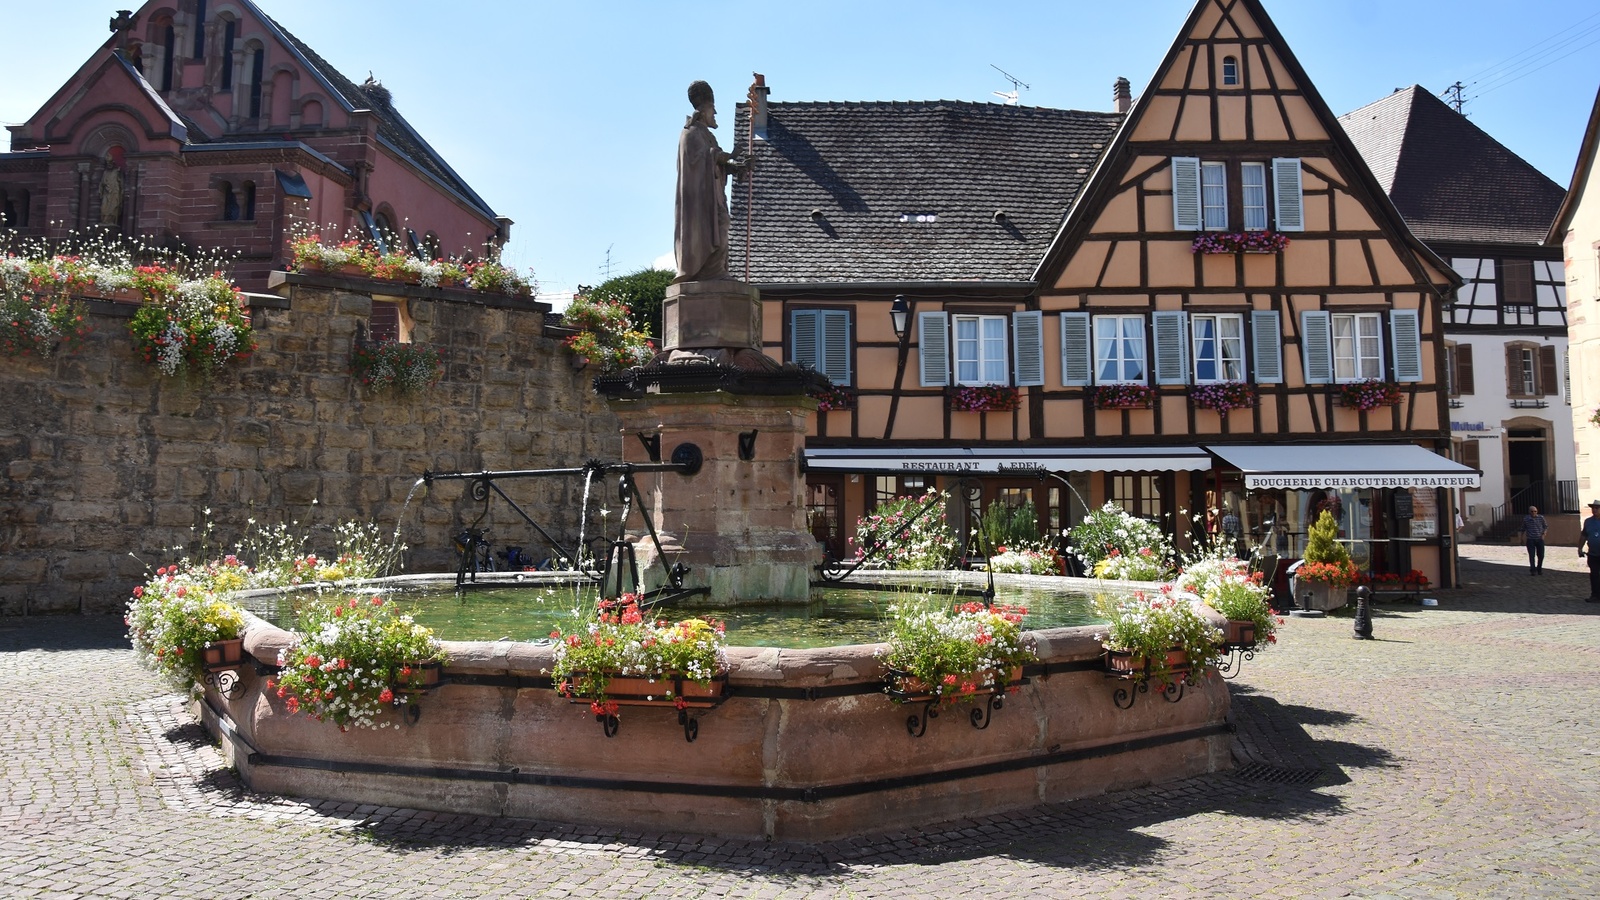 Hyggelig by i Alsace, Frankrig